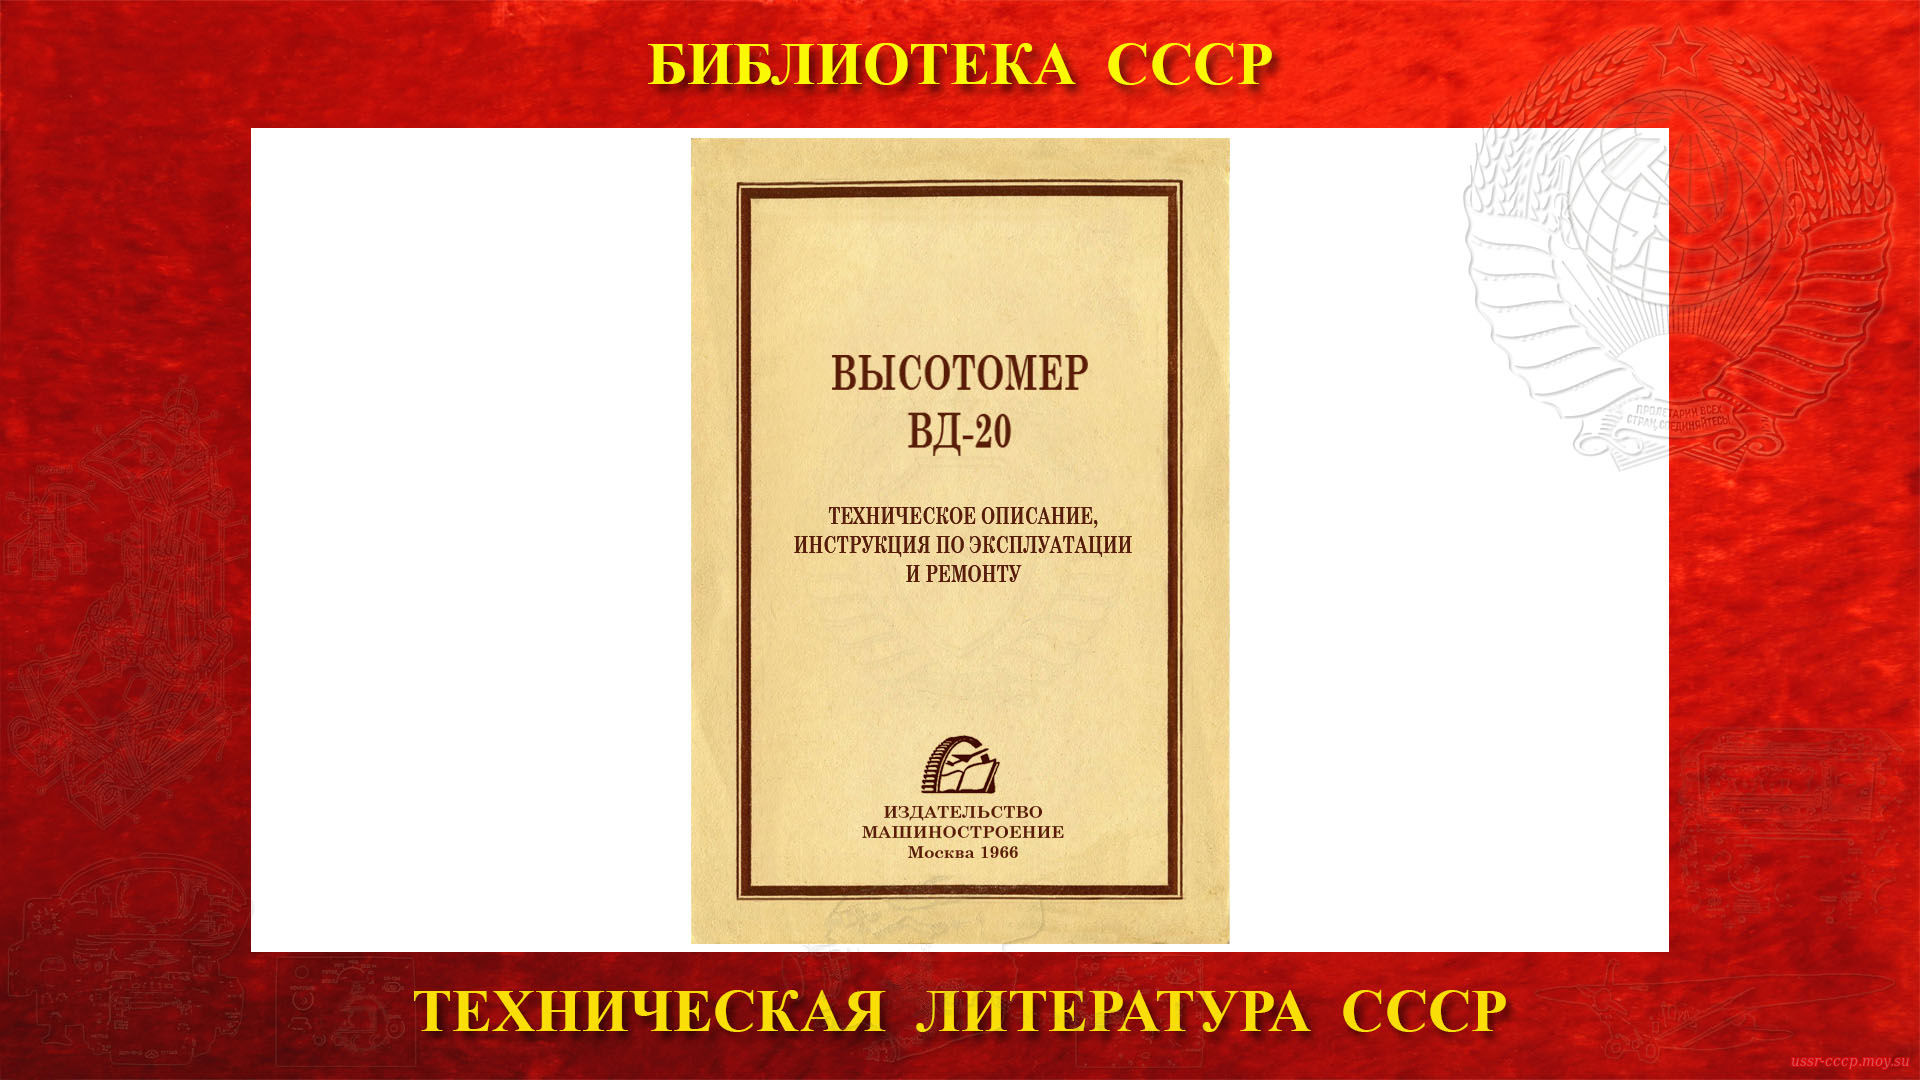 Высотомер ВД-20 — Библиотека СССР